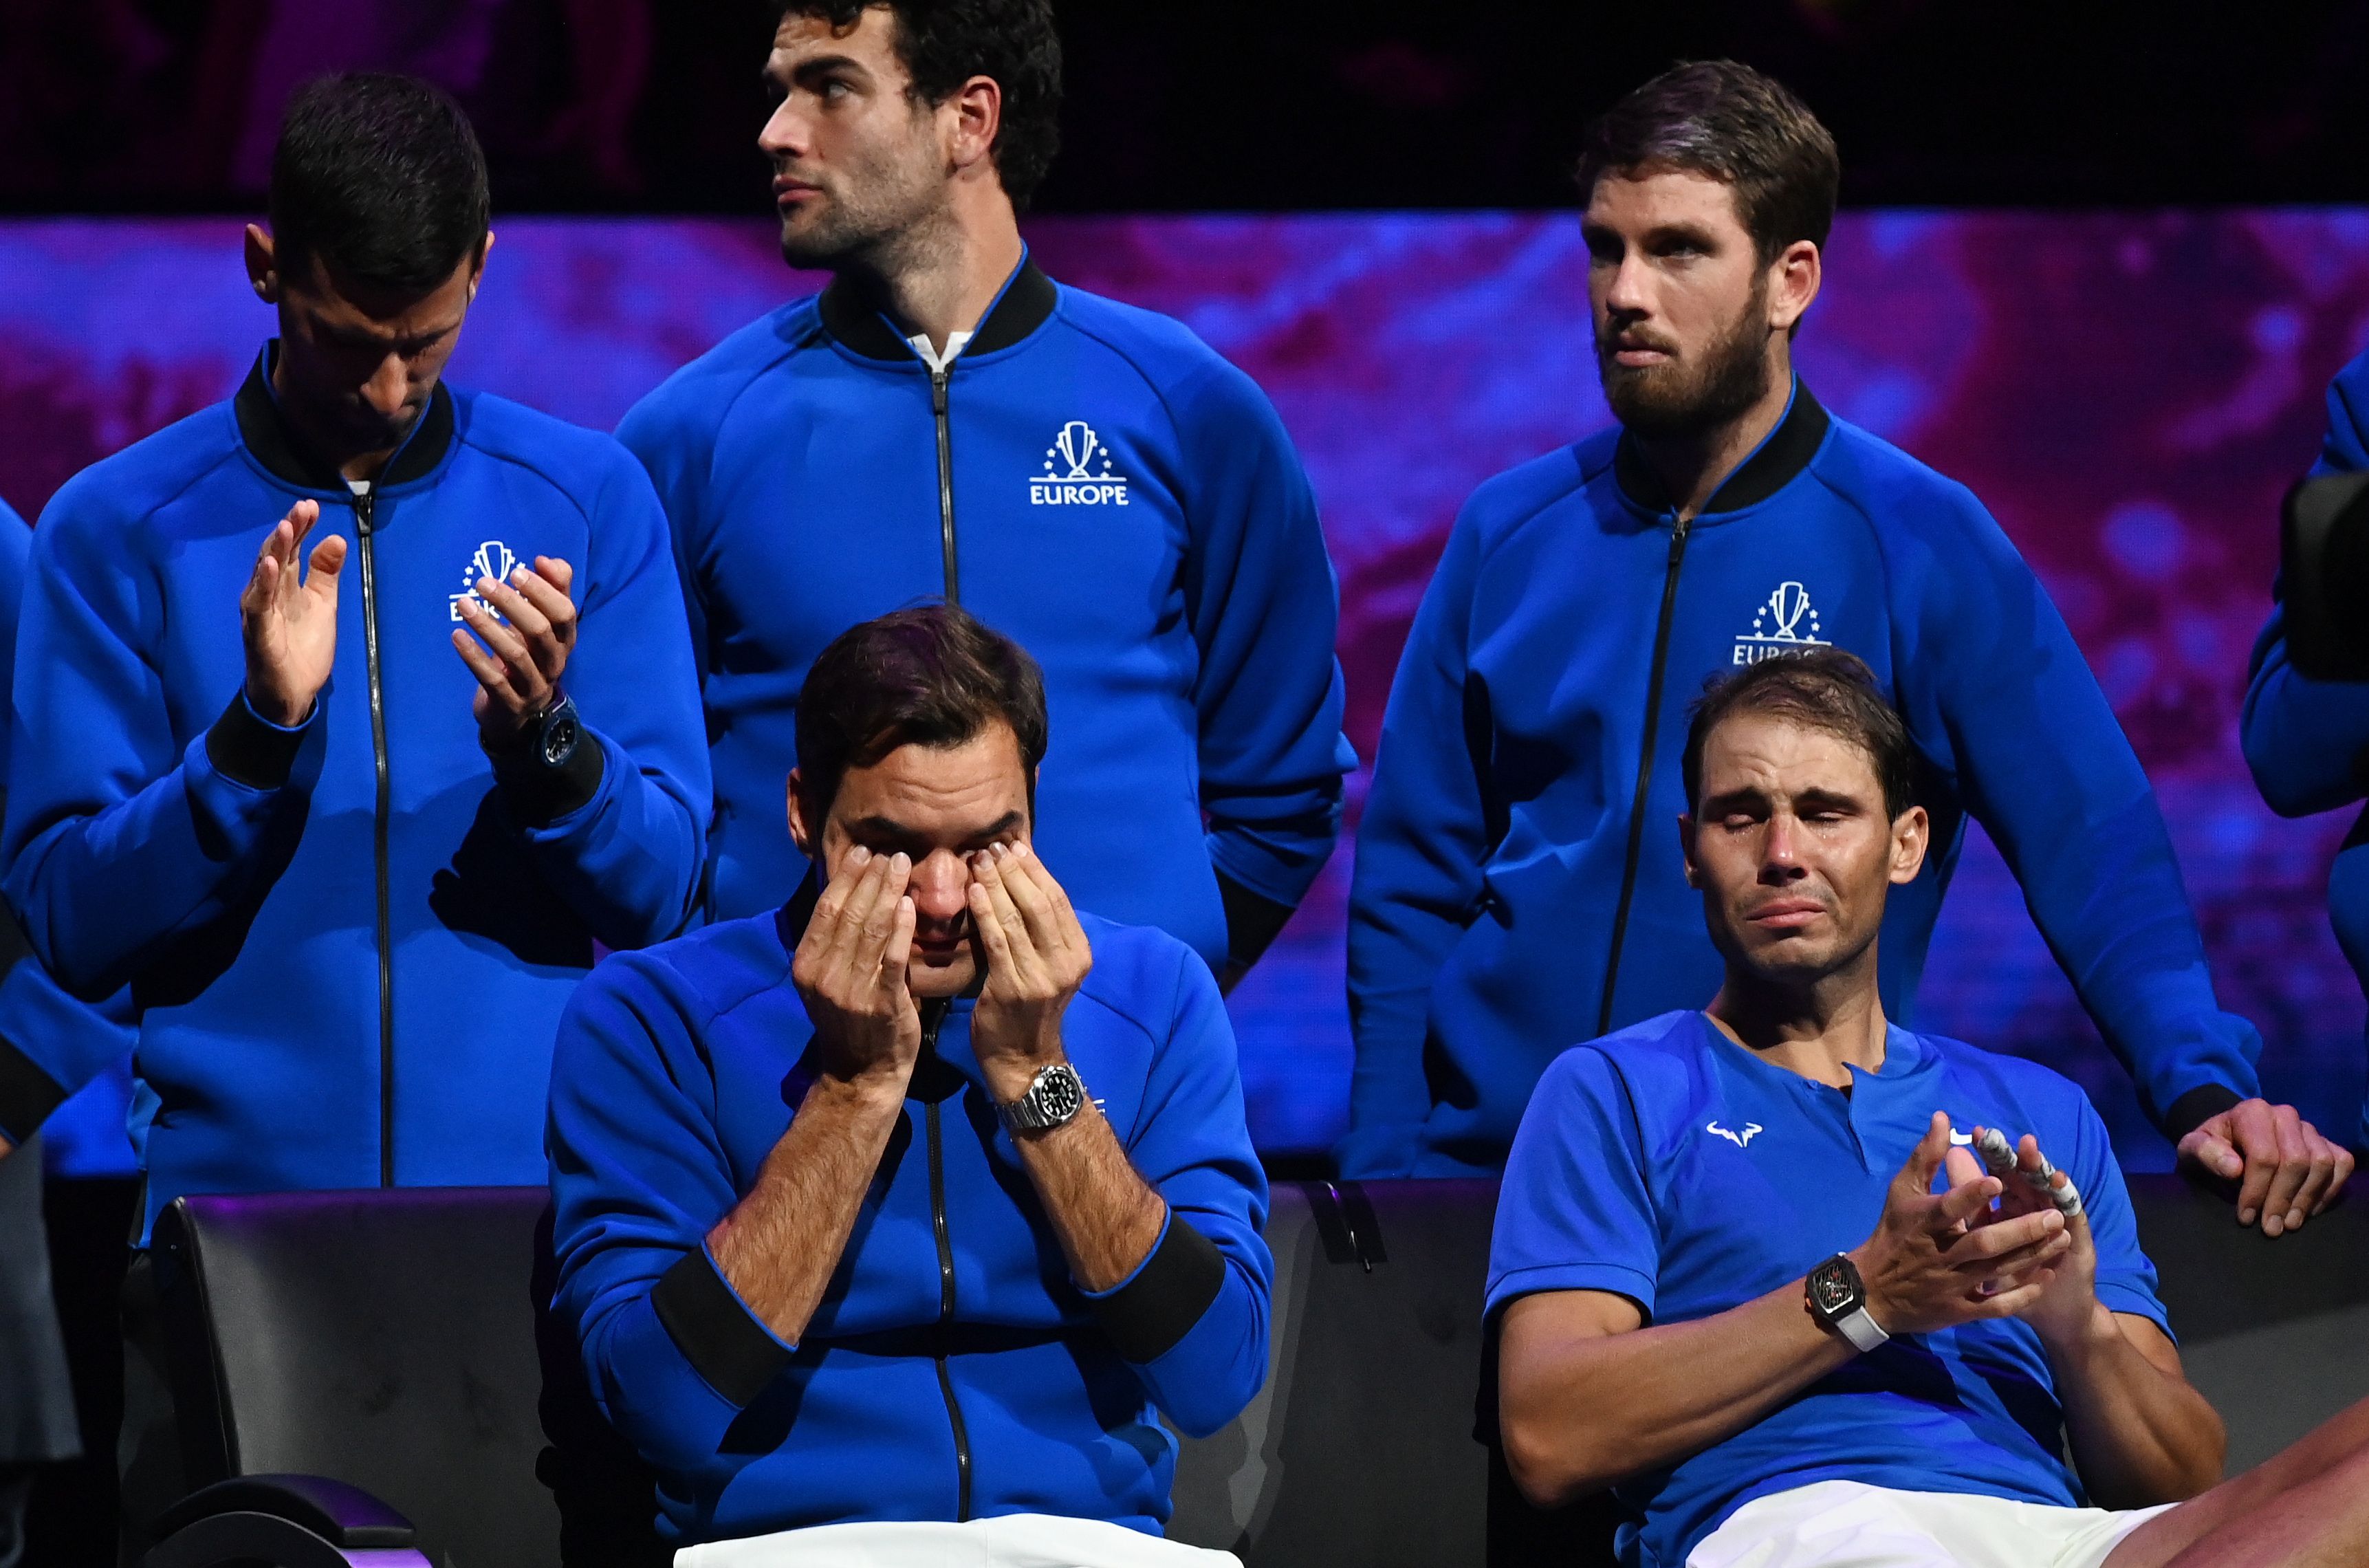 Nem csak Roger Federer, de még Rafael Nadal is megkönnyezte a svájci búcsúját / Fotó: EPA